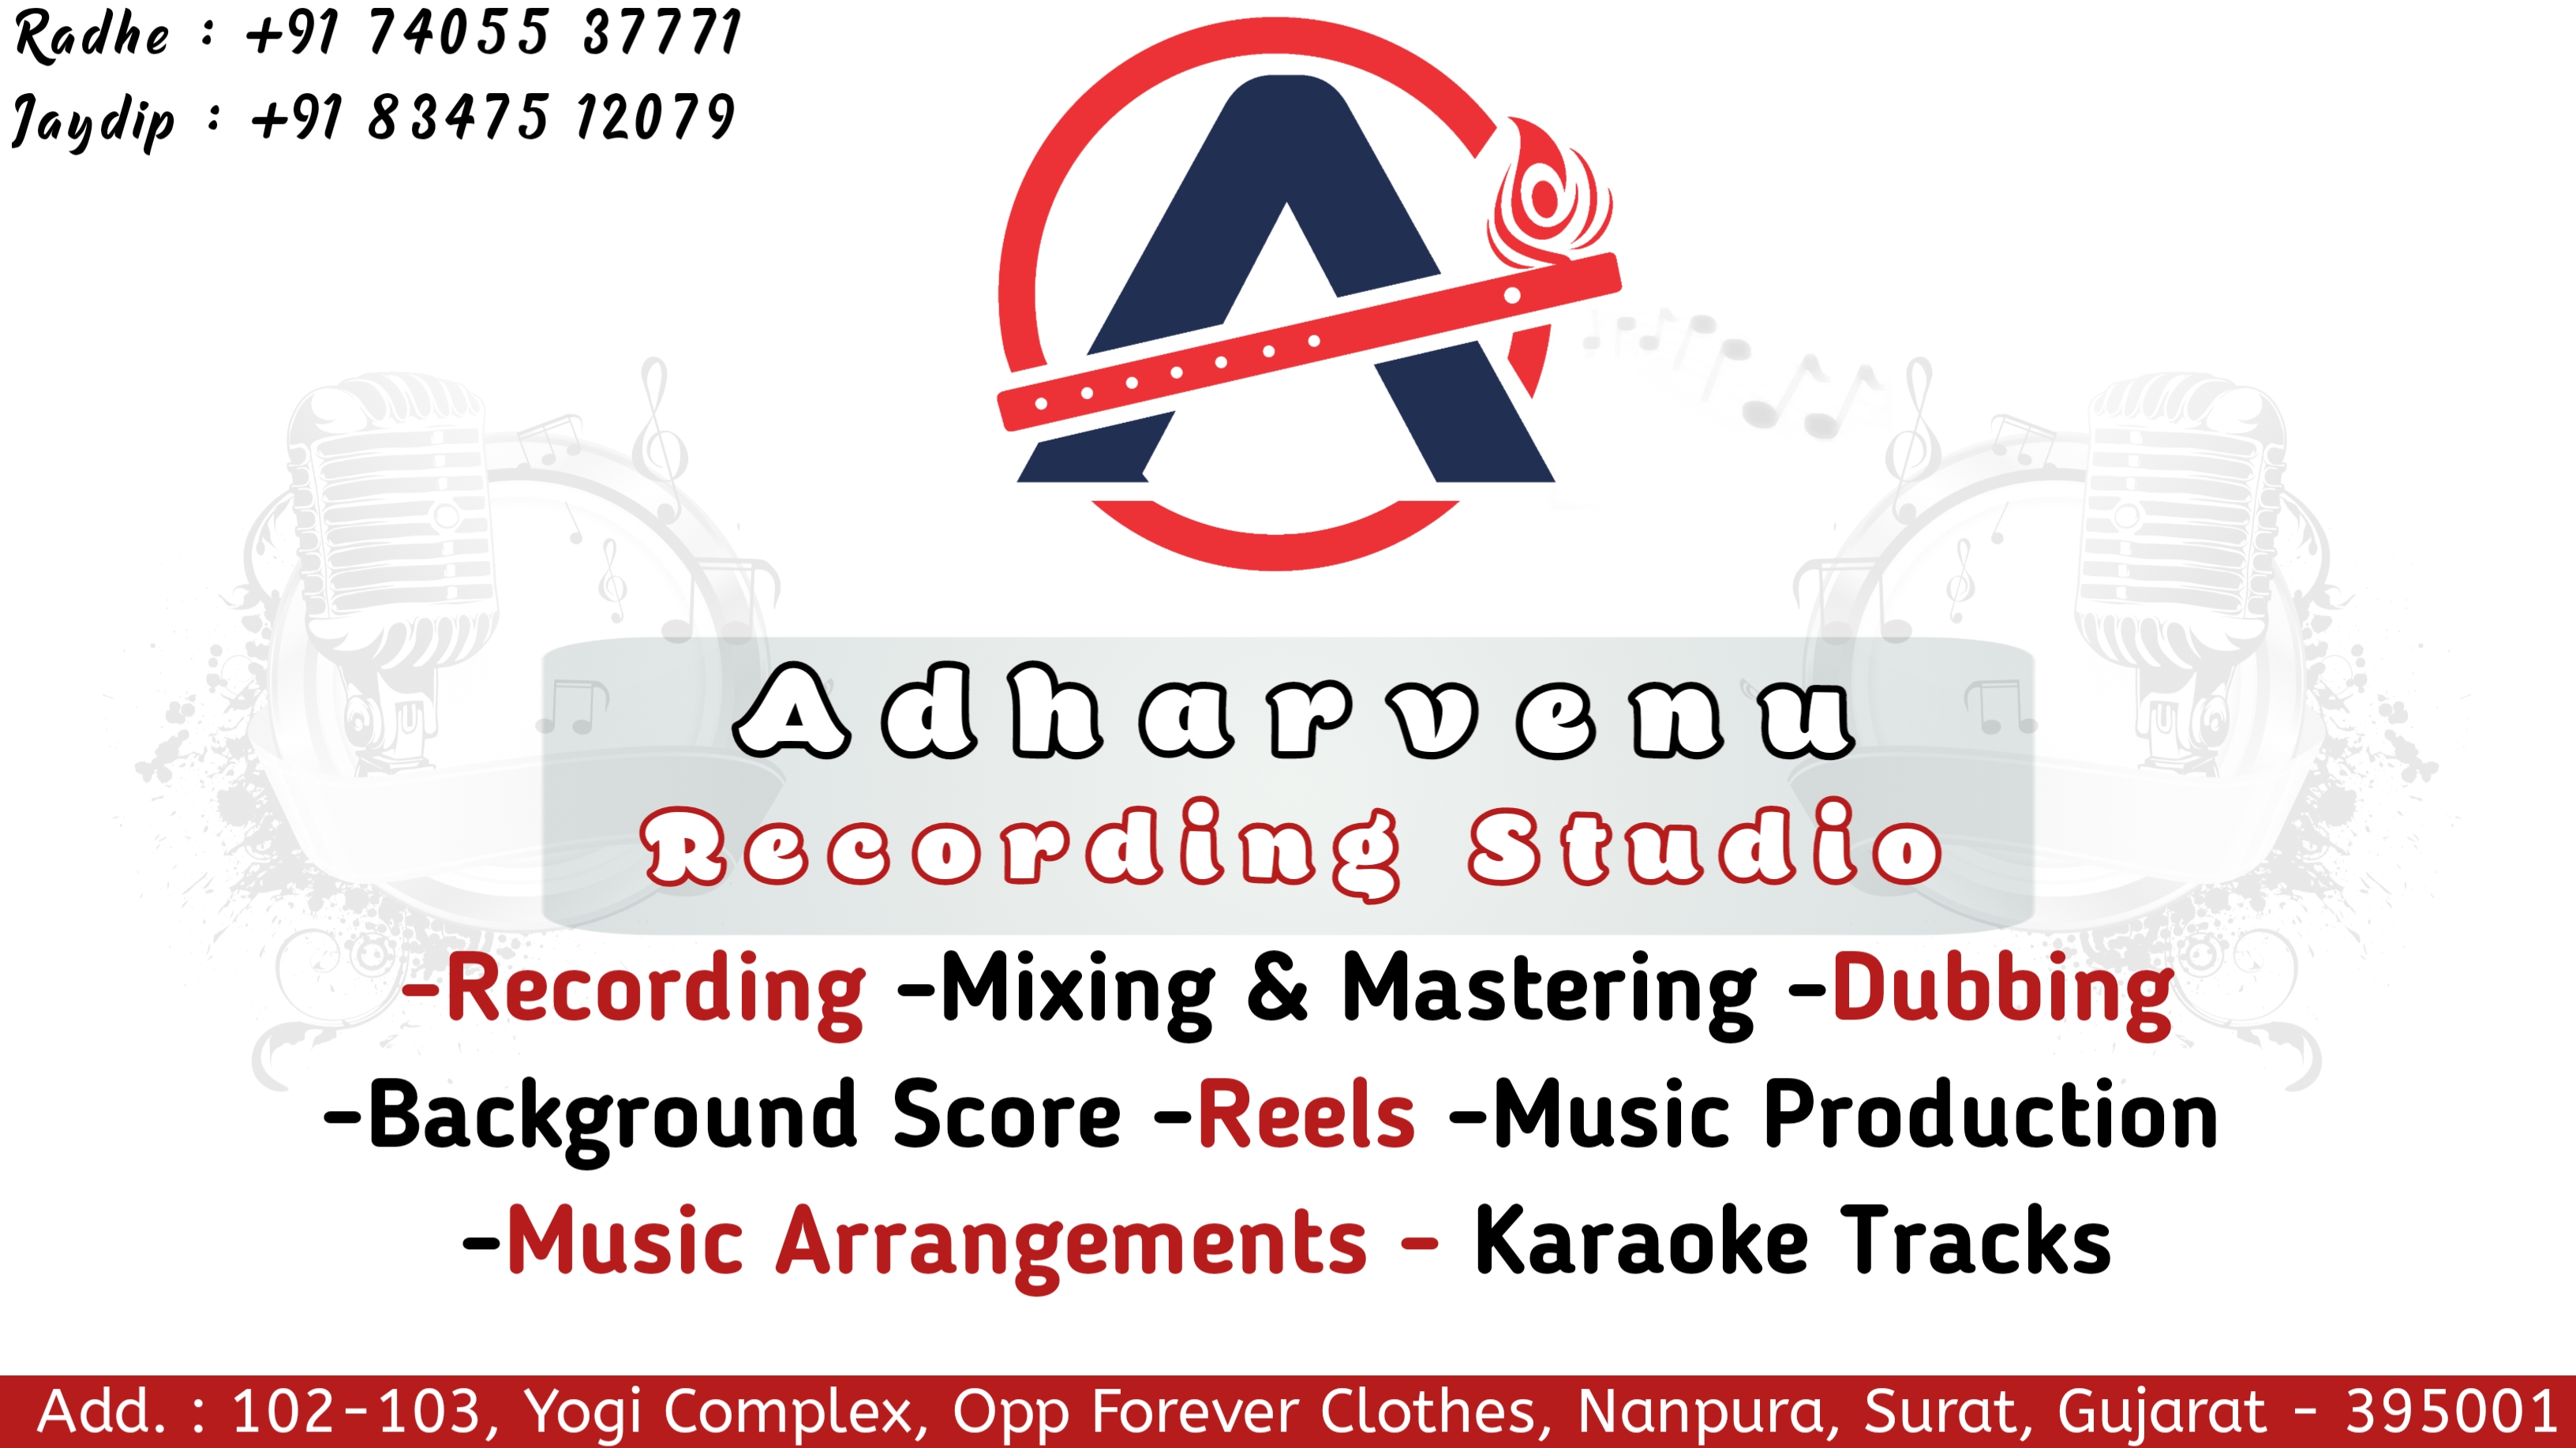 Adharvenu Recording Studio